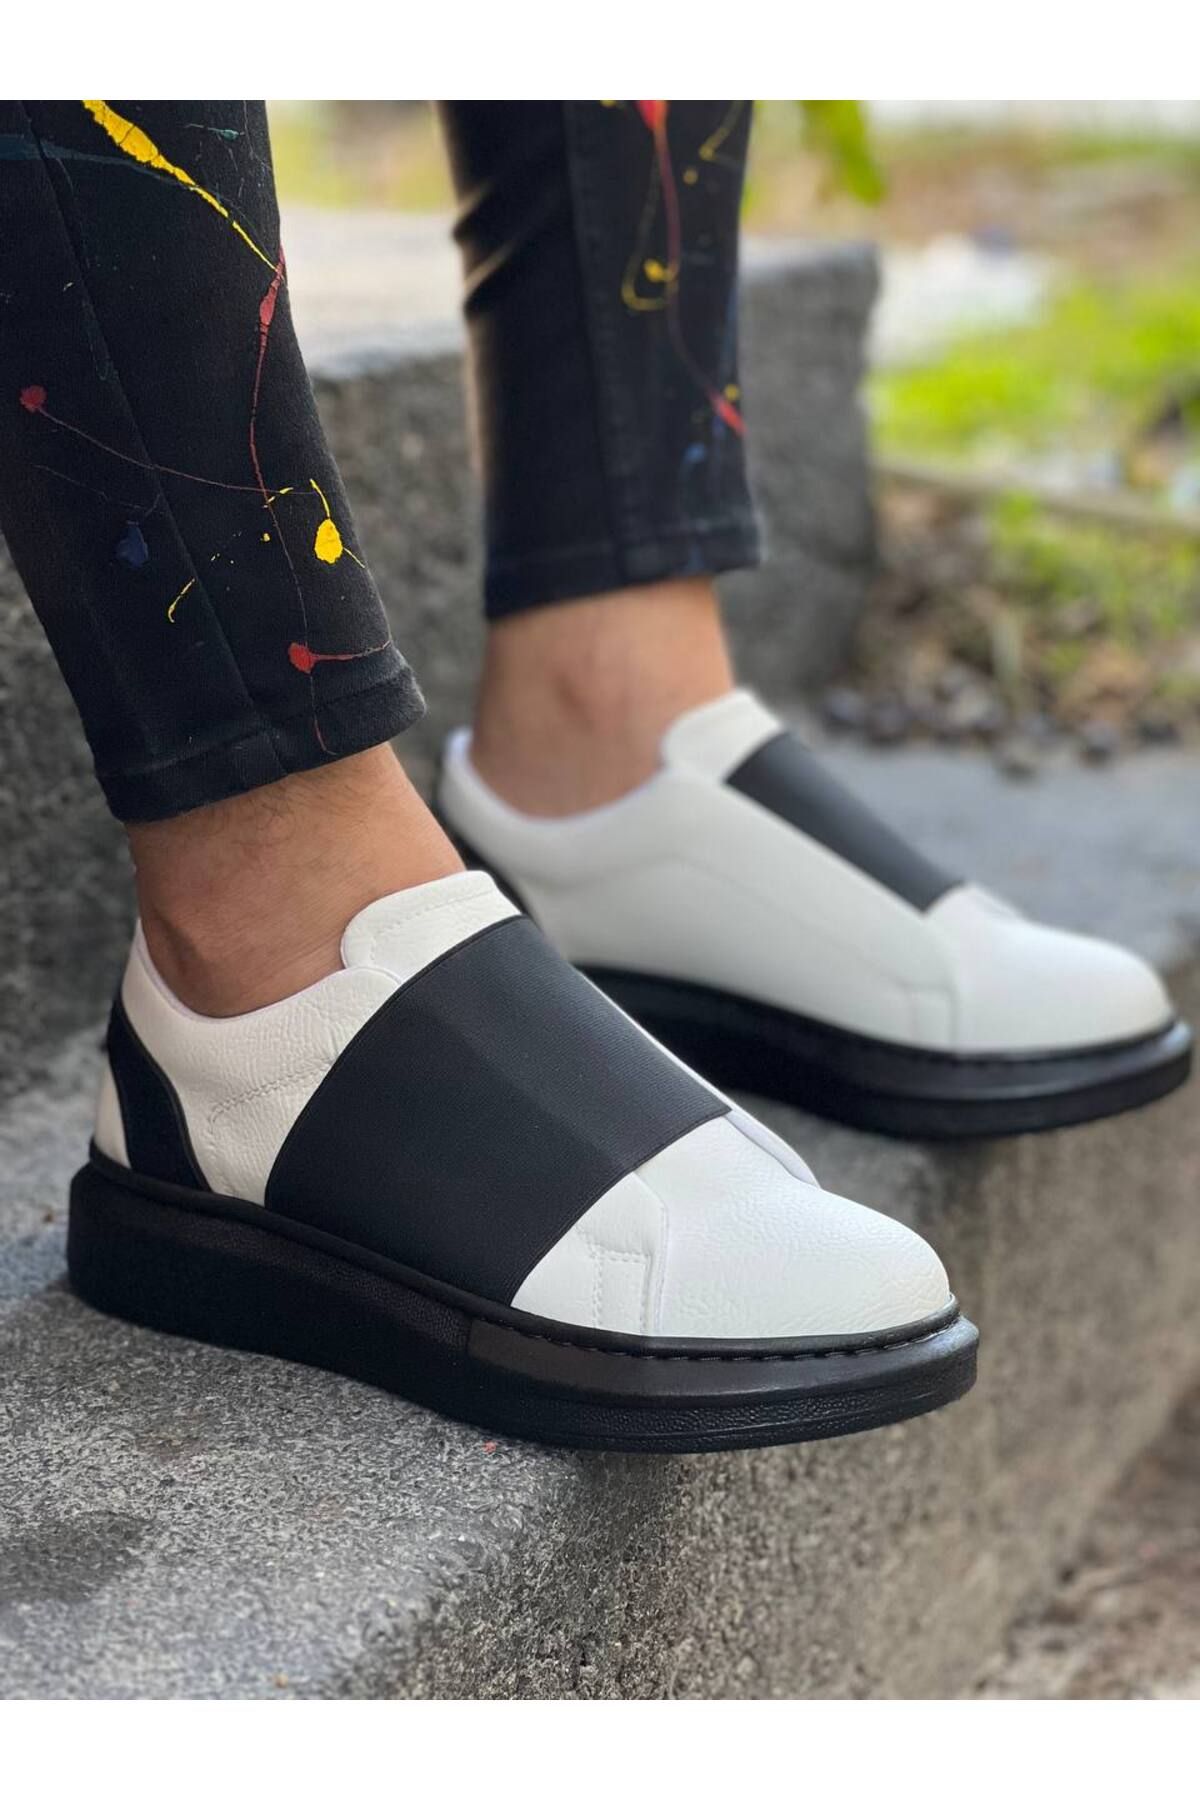 BZ Moda B040 ST Bağcıksız Kalın Lastikli Ortopedik Taban Erkek Sneaker Ayakkabı Beyaz/Siyah